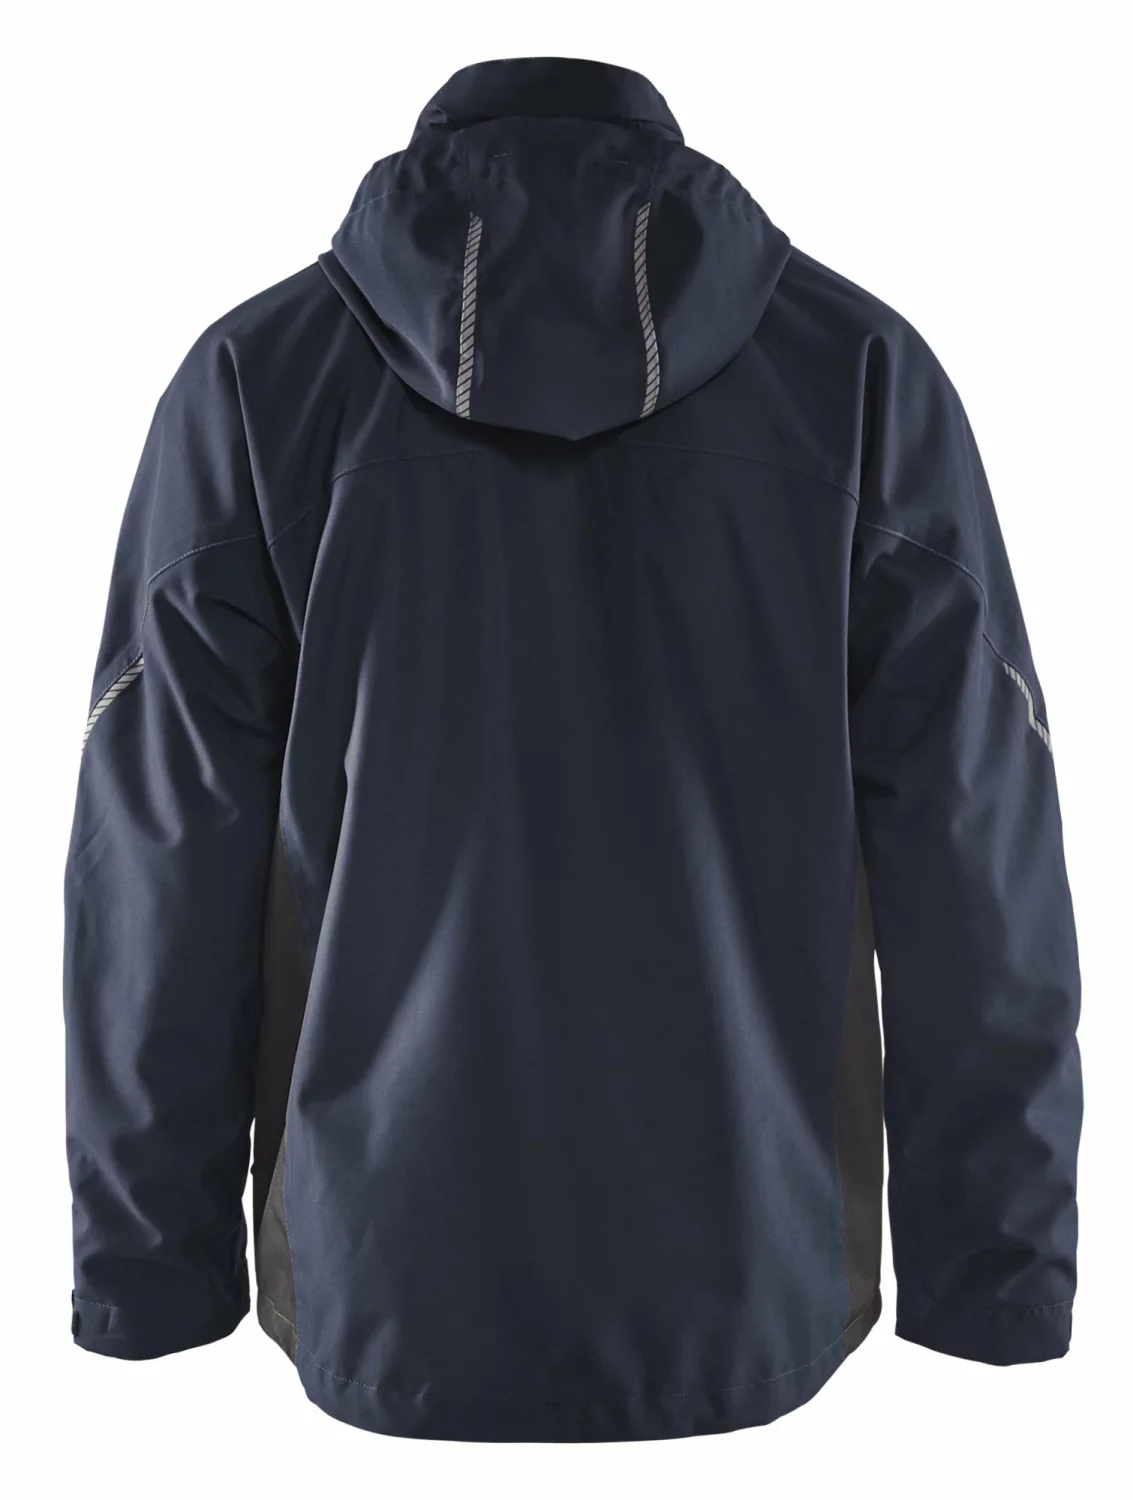 Blåkläder 4890 Lichtgewicht winterjas - donker marineblauw/zwart - XL